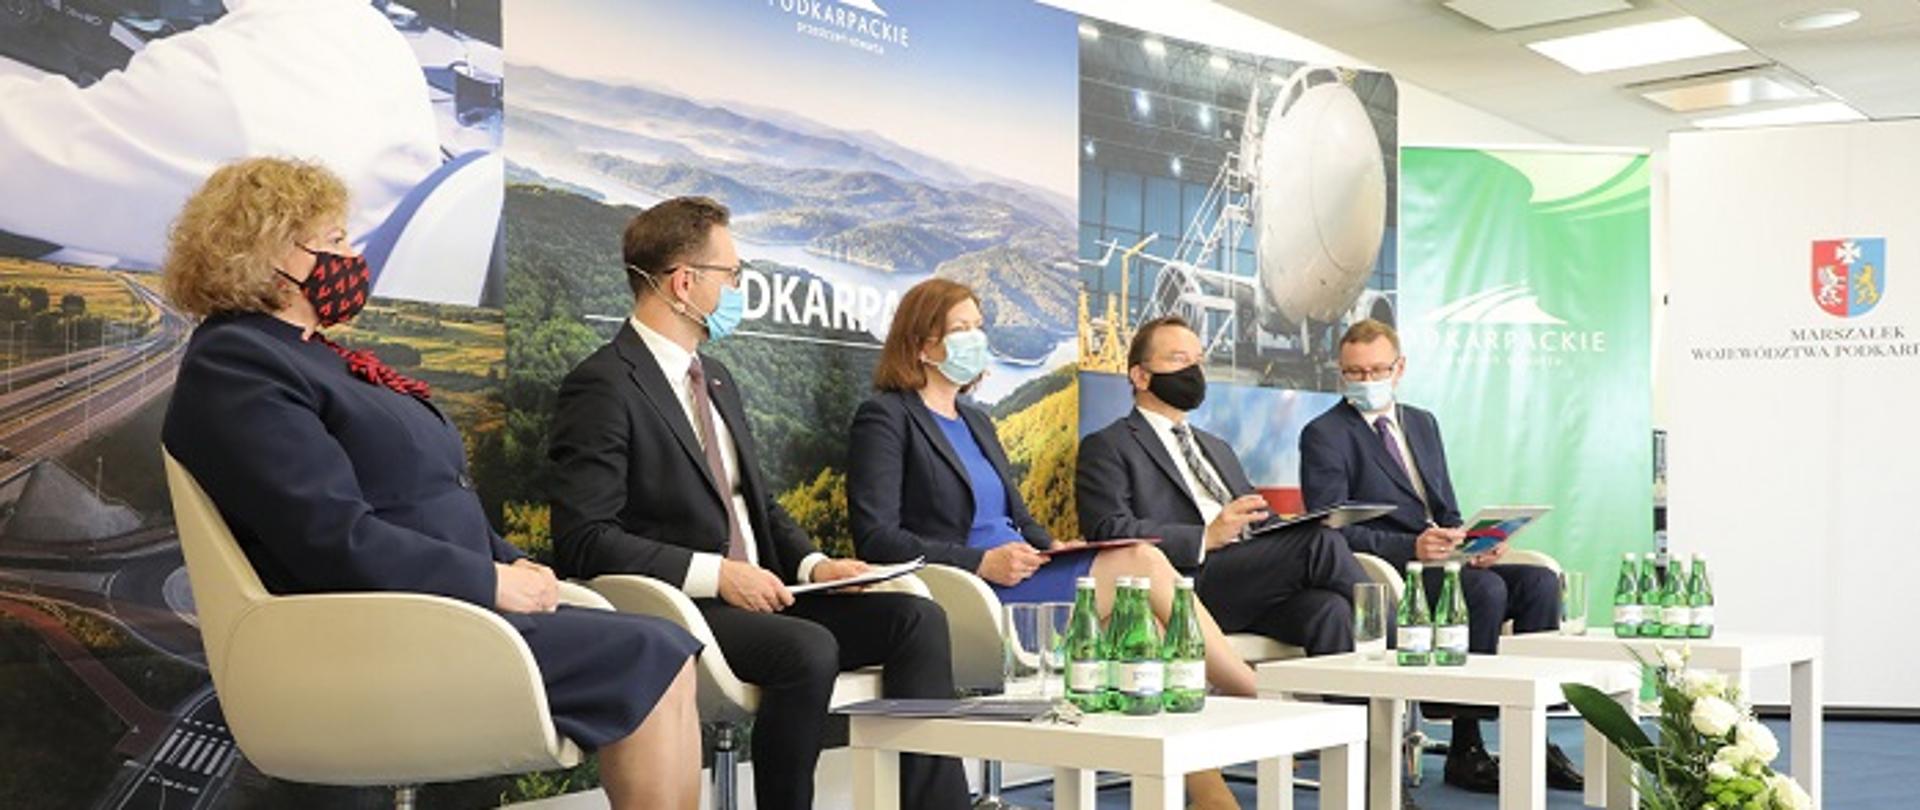 Pięć osób, dwie kobiety, trzech mężczyzn, siedzą w rzędzie na konferencji. Za nimi zdjęcia przedstawiające krajobraz Podkarpacia.